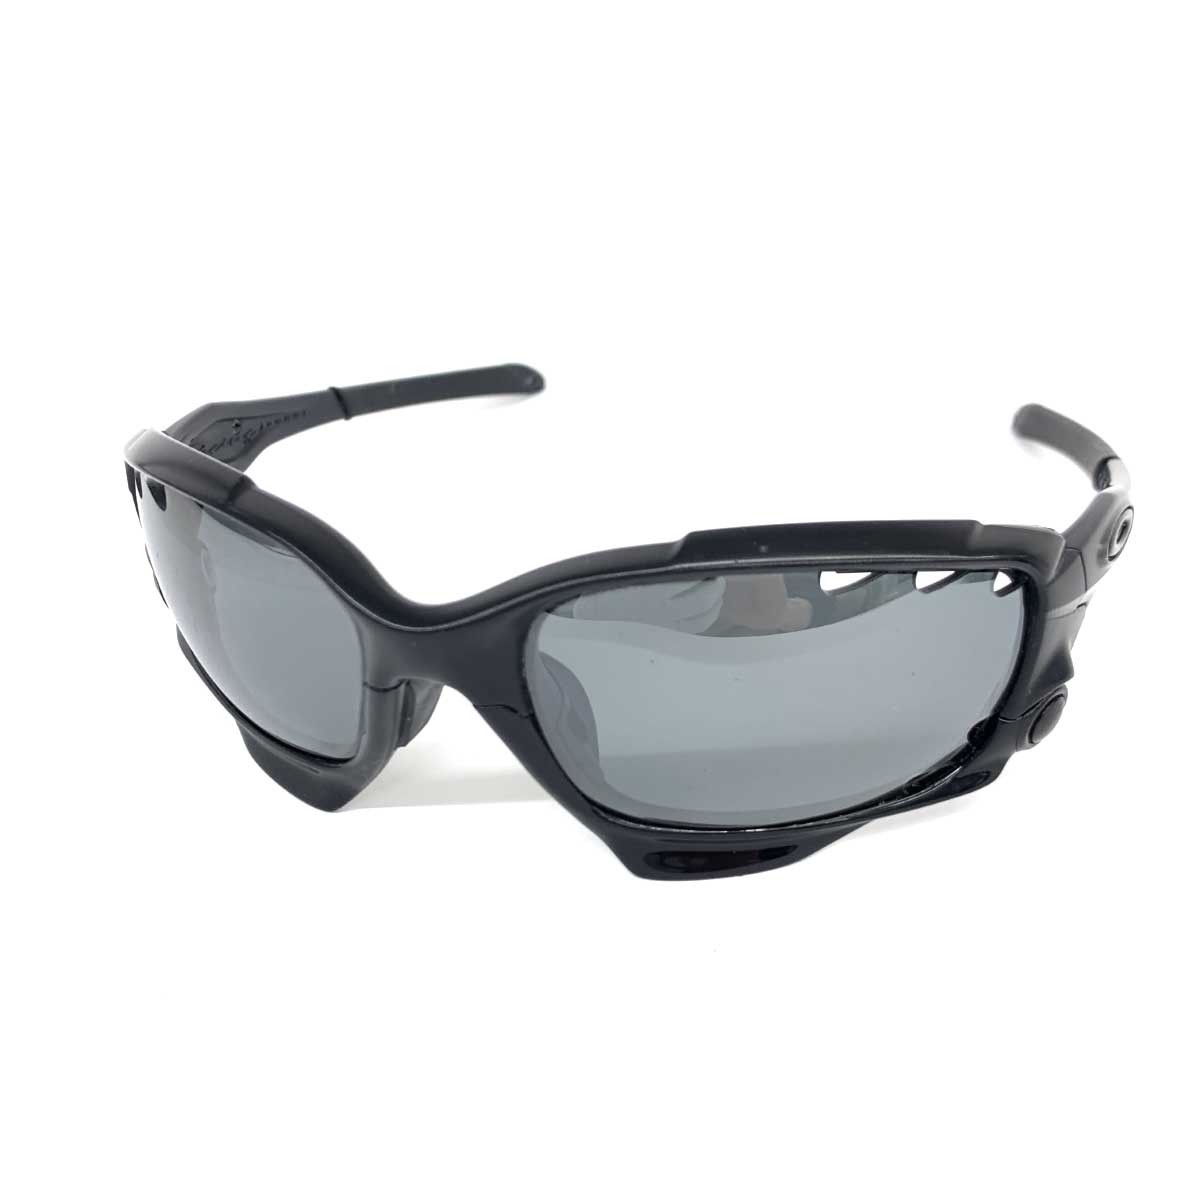 良好◆OAKLEY オークリー サングラス◆OO9197-07 ブラック メンズ sunglasses 服飾小物